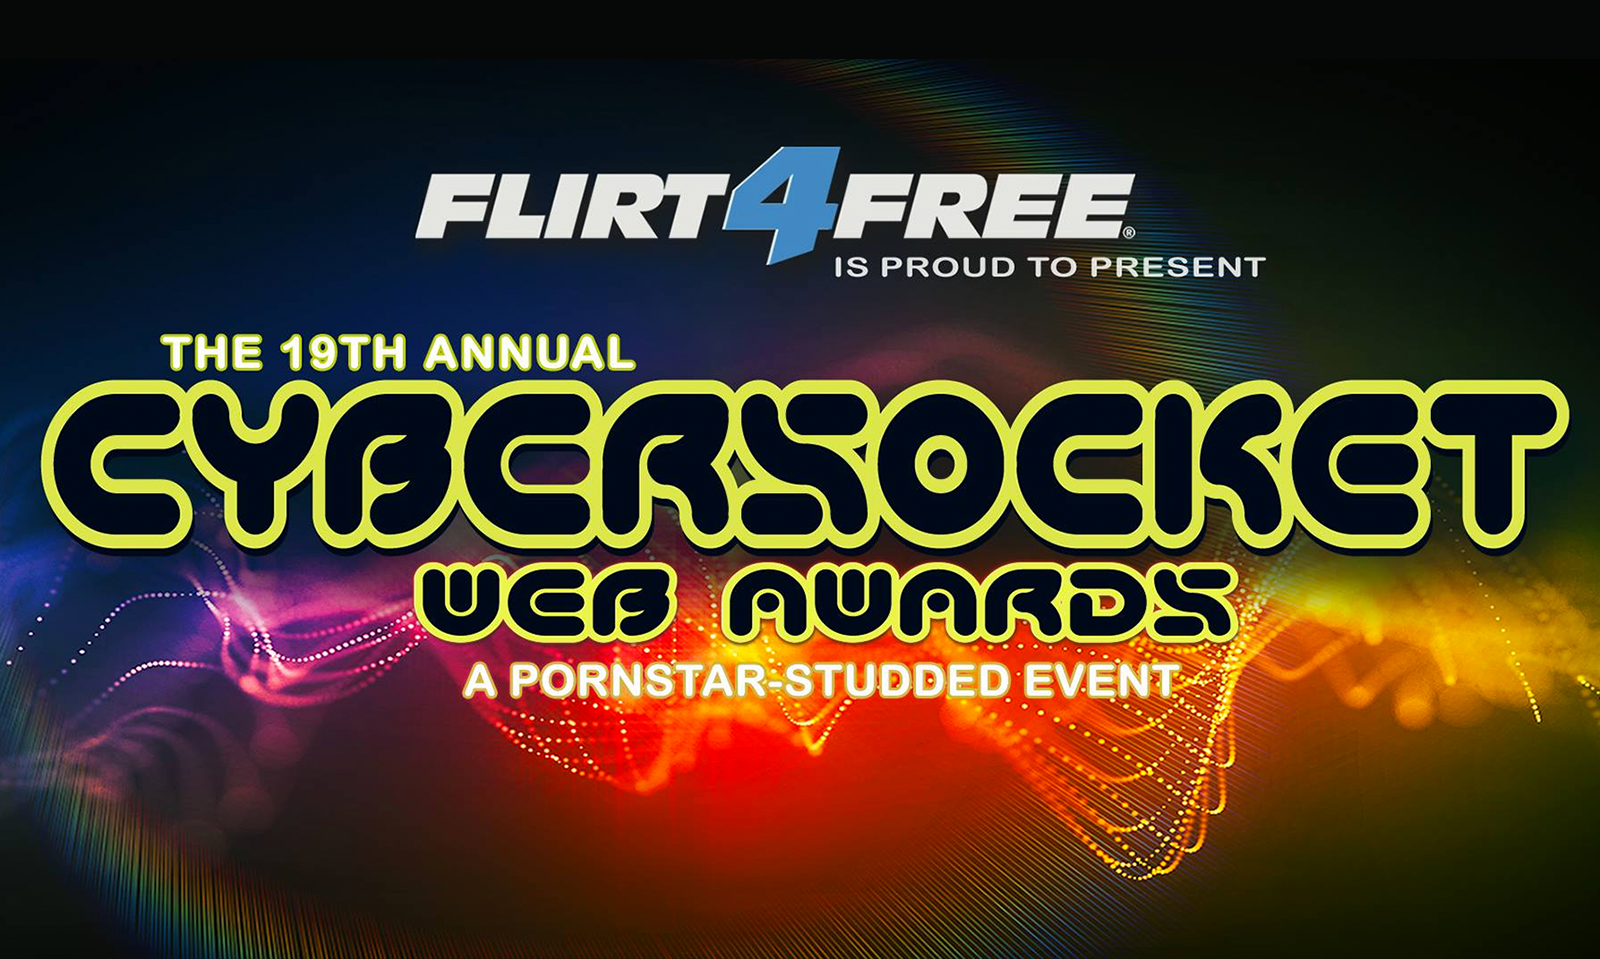 Winners of 2019 Cybersocket Web Awards Announced